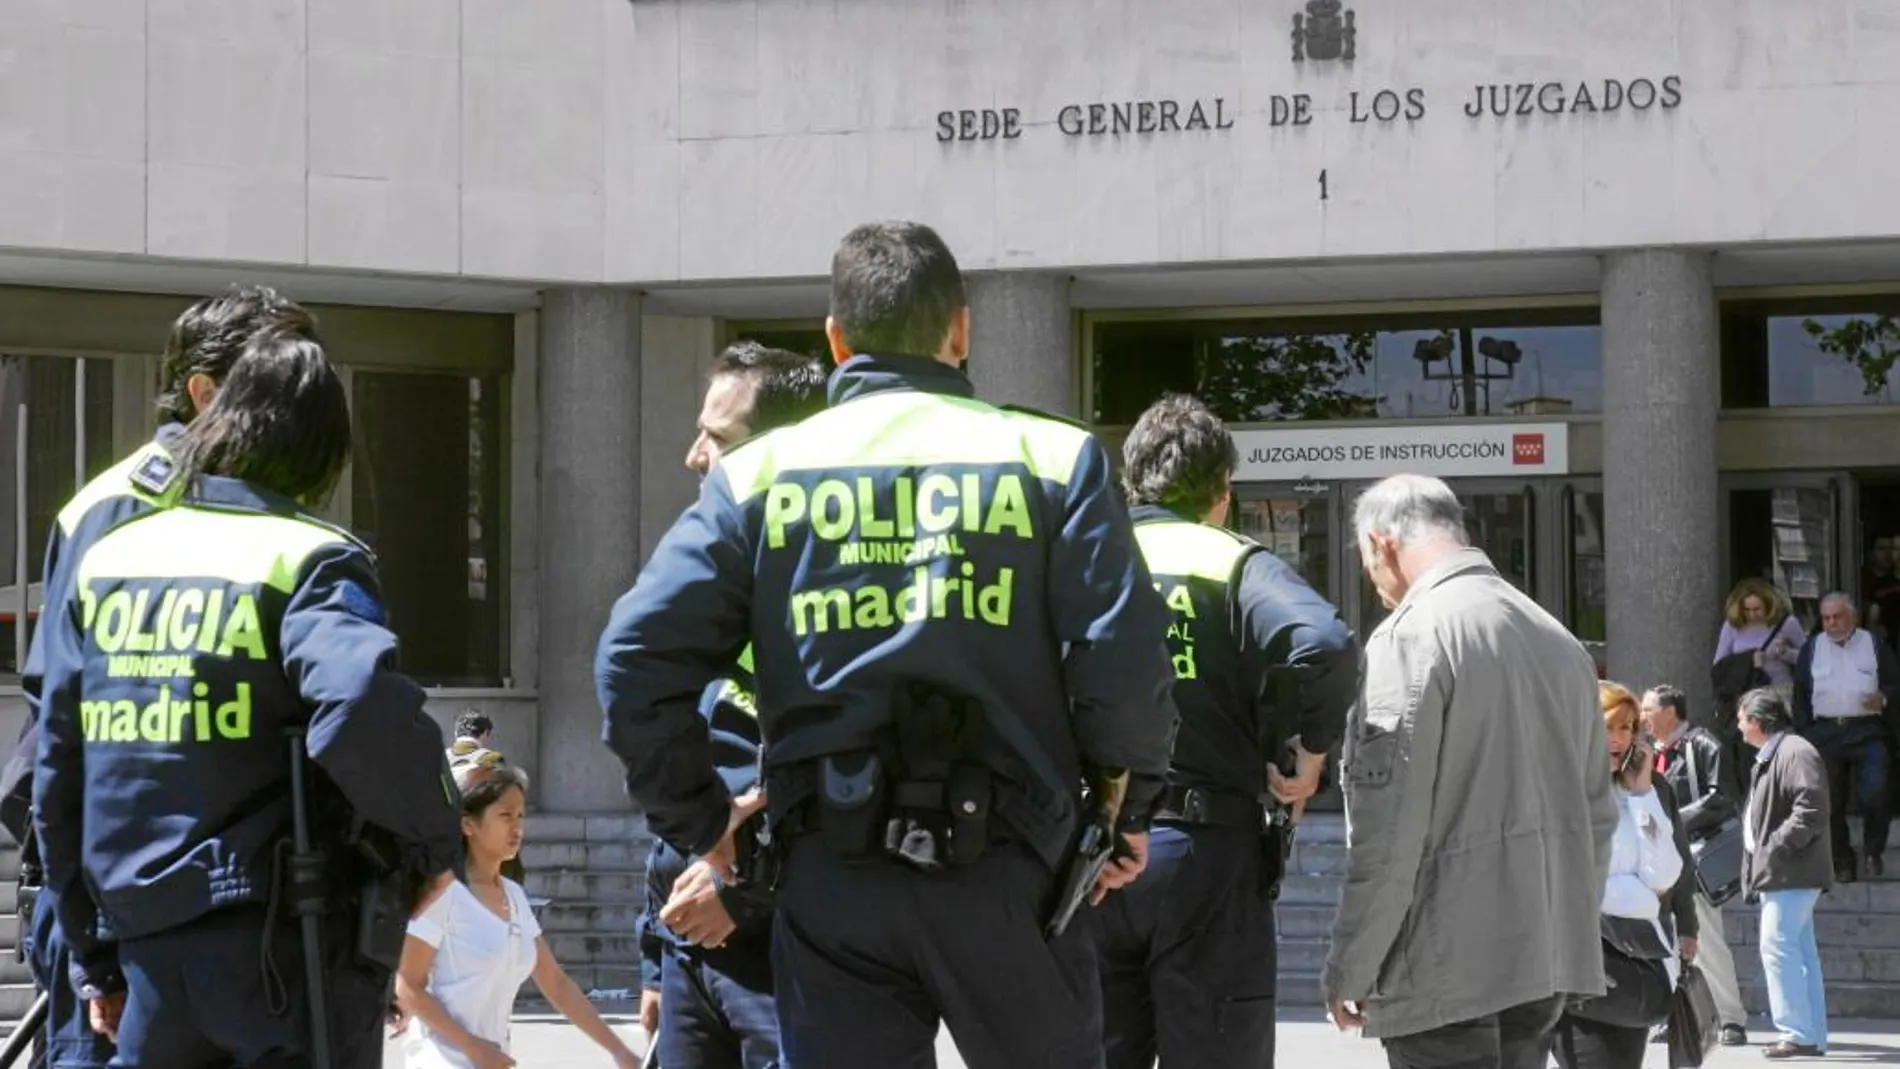 La Policía Municipal lleva en los juzgados de Plaza de Castilla desde 2008 tras un acuerdo entre el ex decano José Luis González Armengol y el ex concejal Pedro Calvo